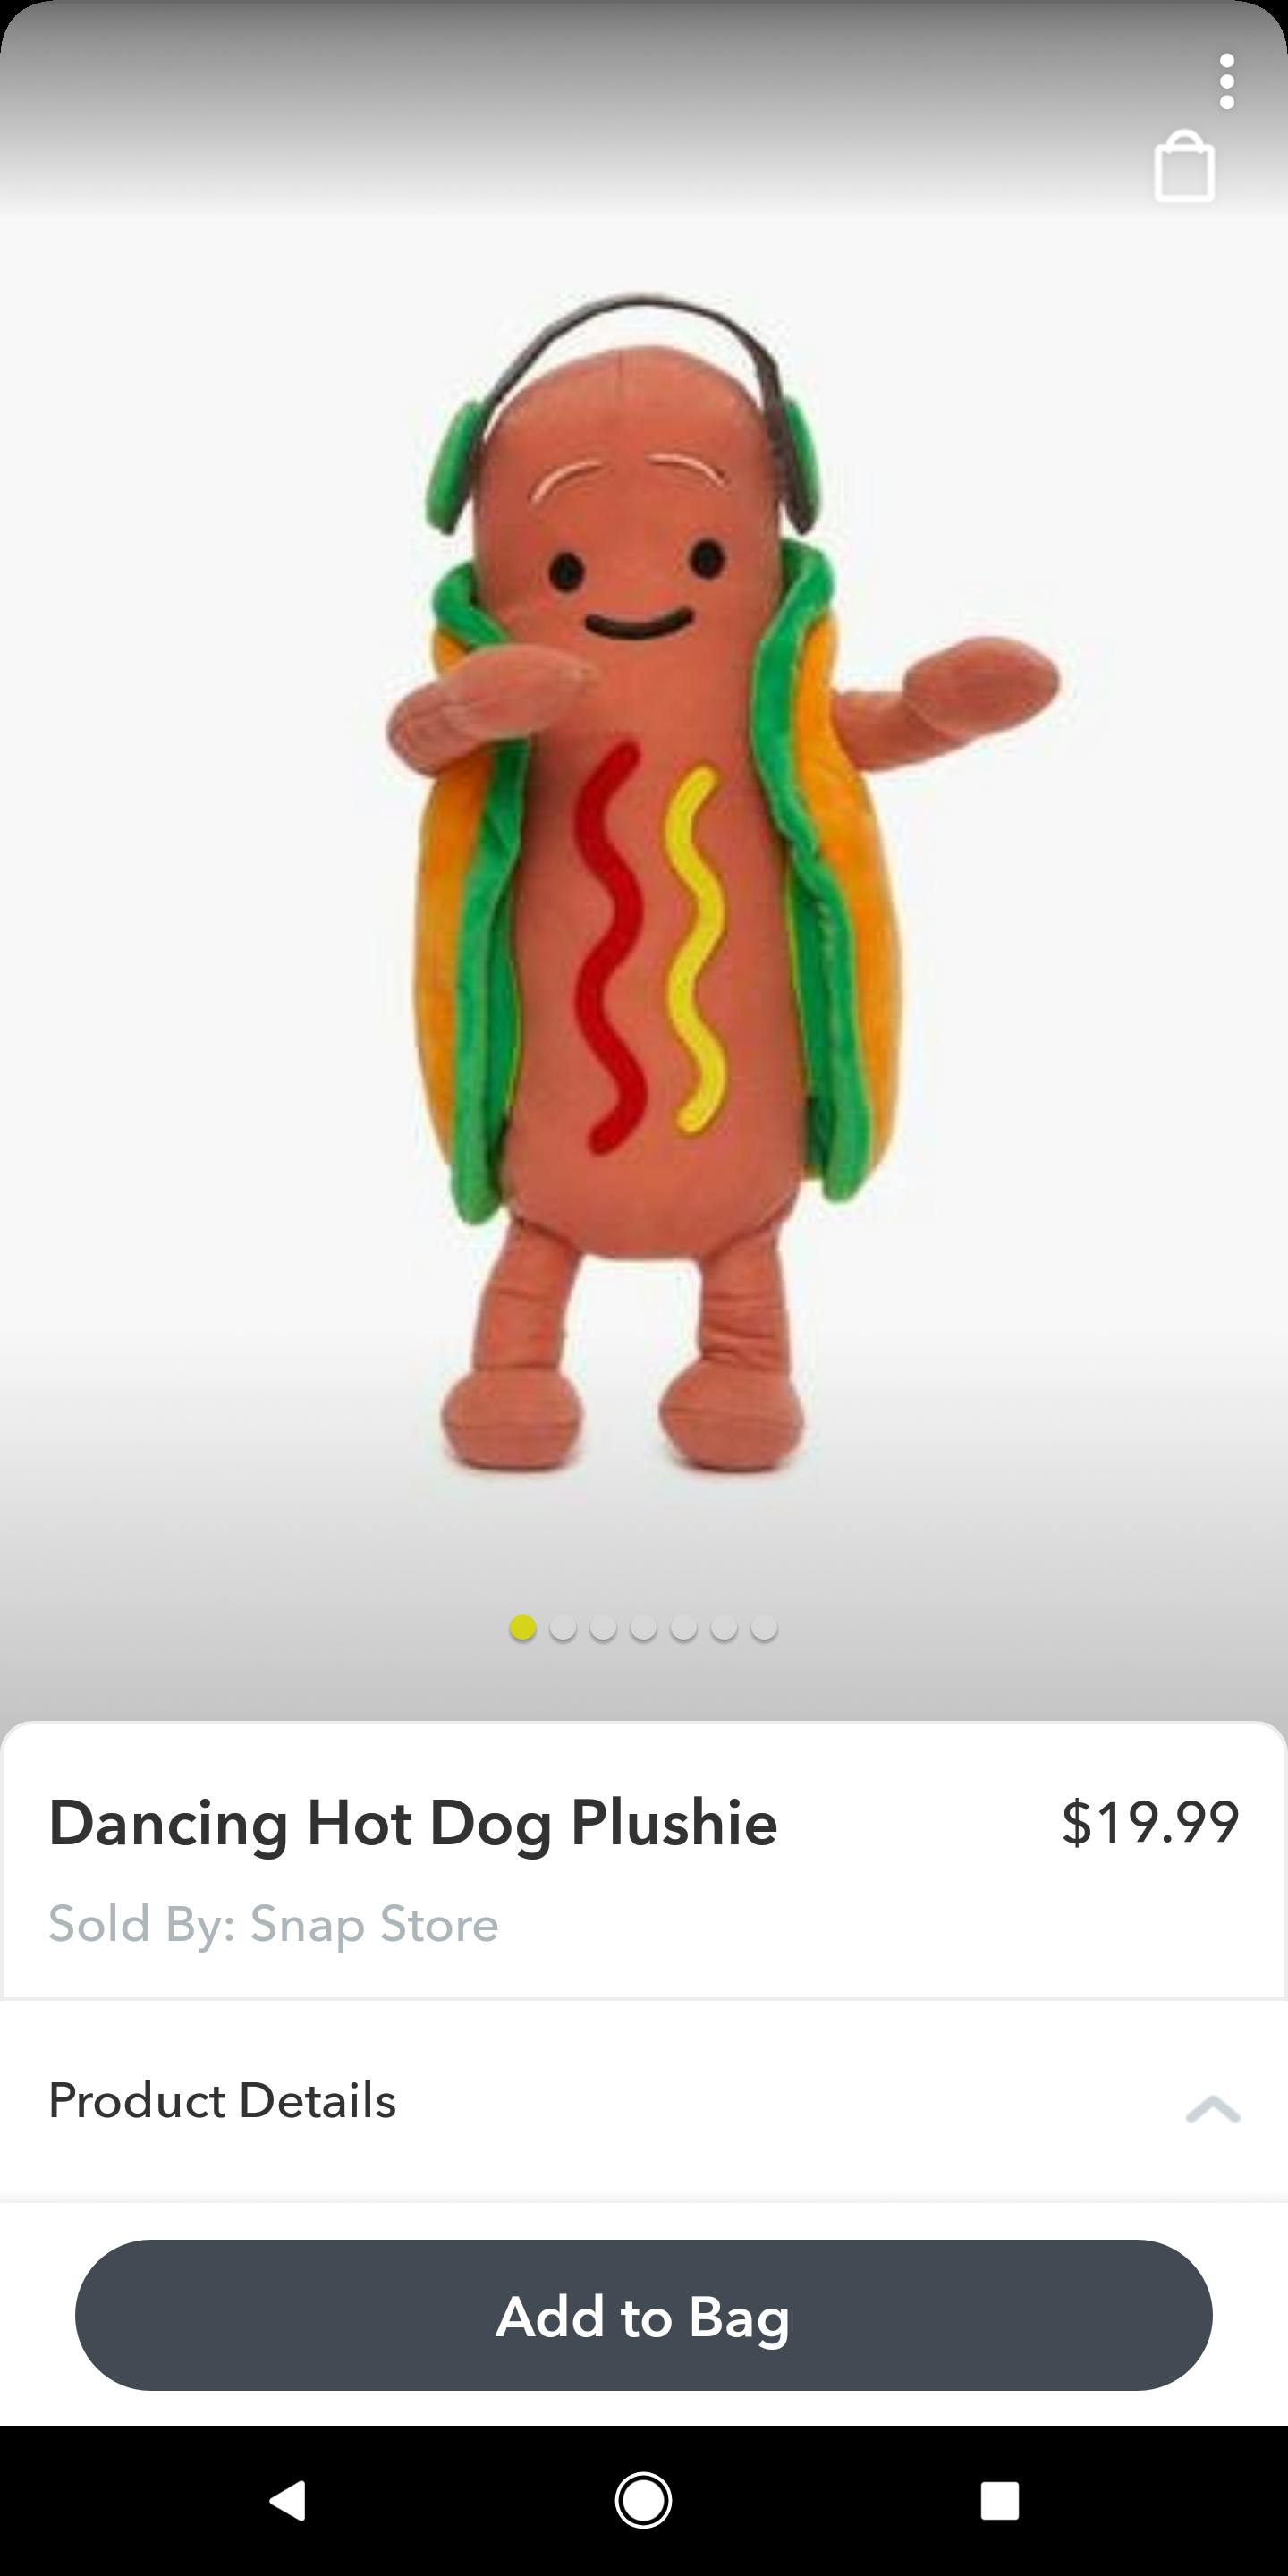 snapchat snap store dancing hot dog